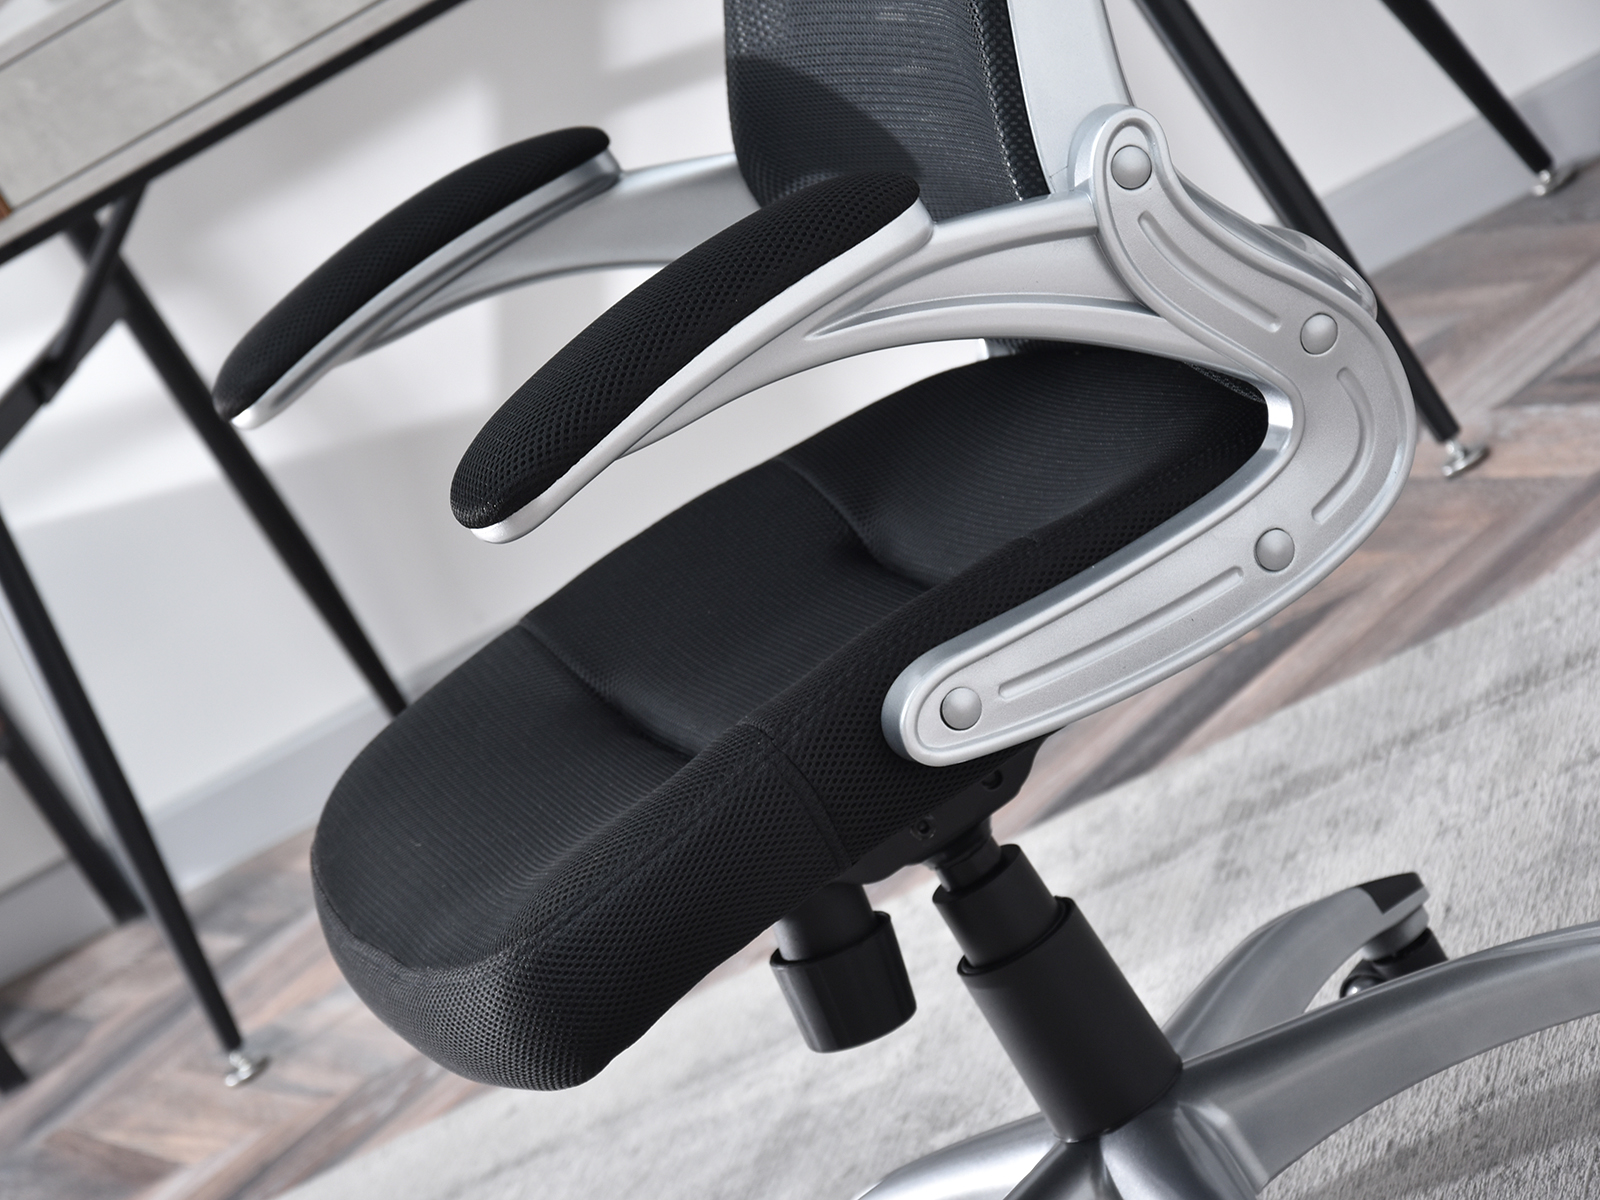 Fotel biurowy LUPO czarna tkanina mesh + srebrne tworzywo - w aranżacji z biurkiem BODEN, regałami GEFION i dywanem GEO